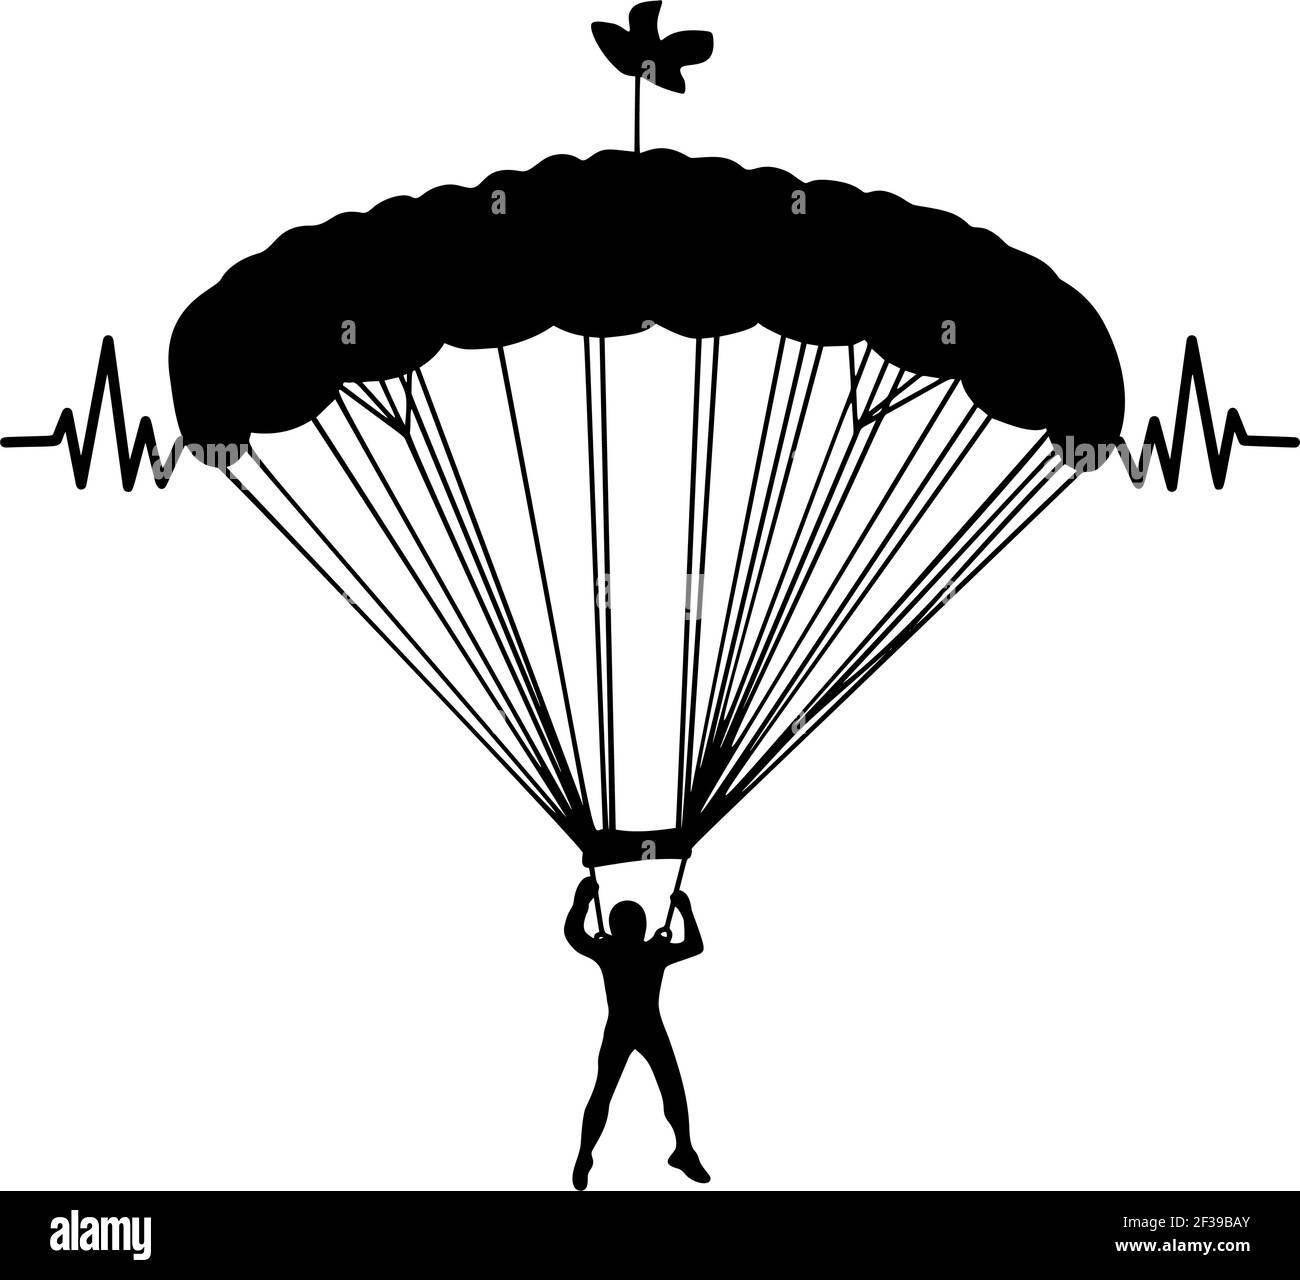 Fallschirmspringer im Flug mit Herzschlag Vektor Silhouette Illustration isoliert auf weißem Hintergrund. Versicherungsrisiko-Konzept. Mann in der Luft springen. Fallschirmspringer A Stock Vektor